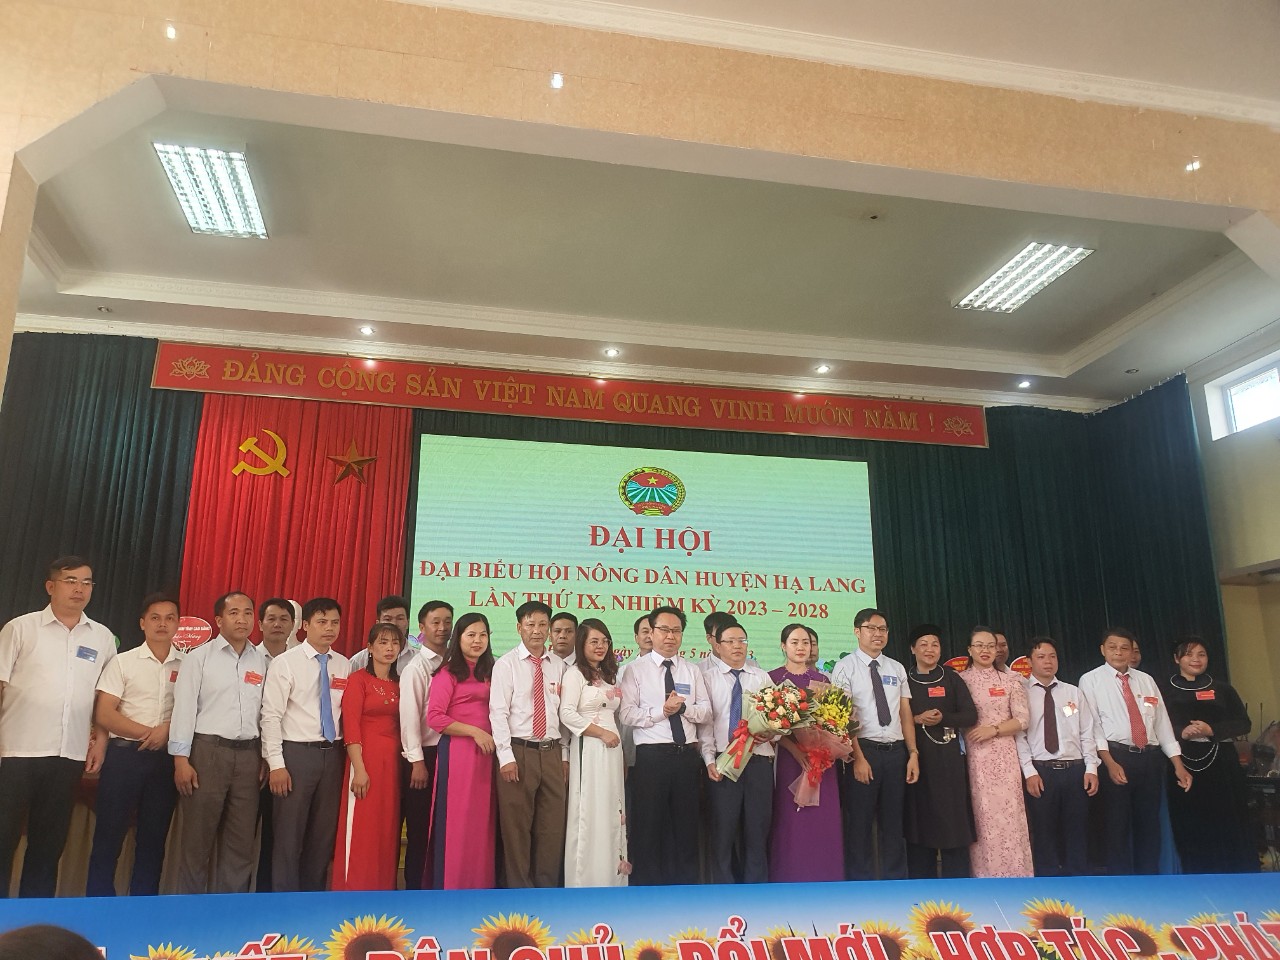 Ban chấp hành Hội Nông dân huyện Hạ Lang khóa IX, nhiệm kỳ 2023 2028 ra mắt đại hội